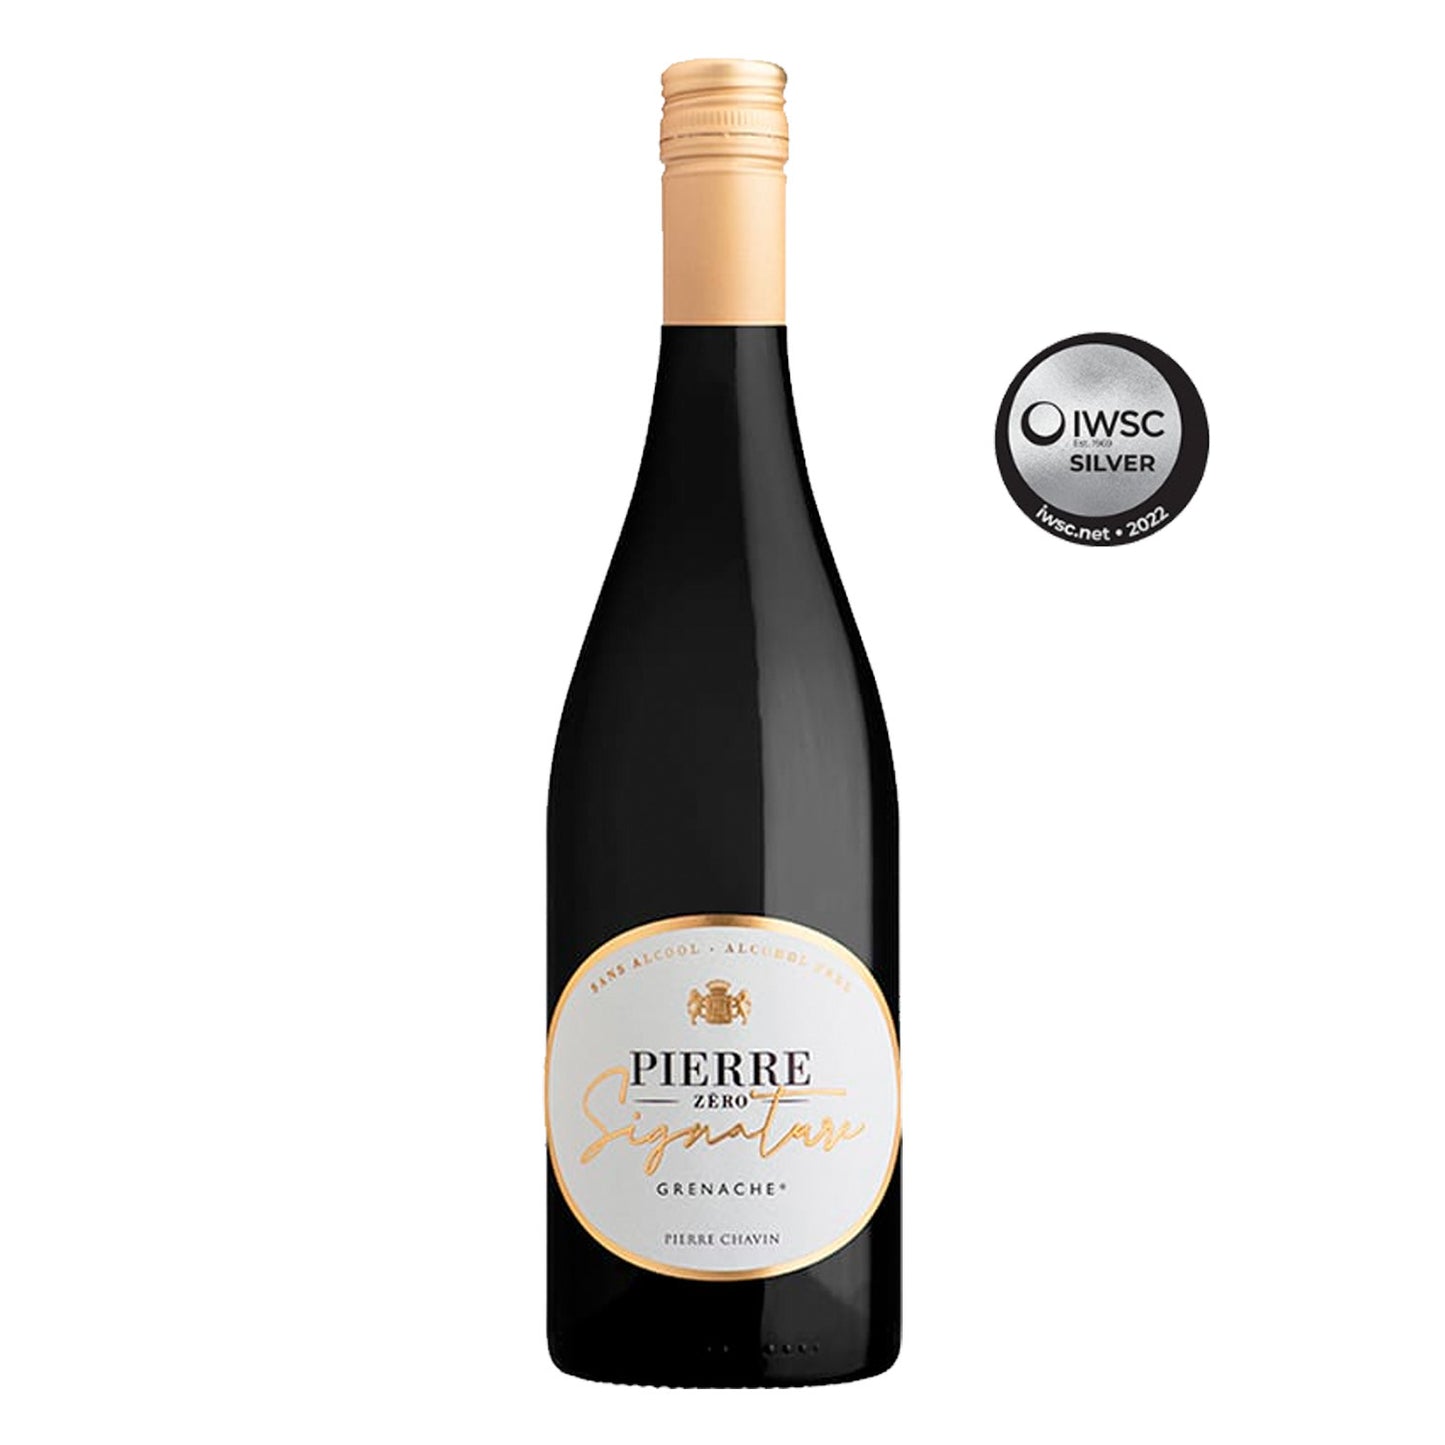 Pierre Zero Signature Grenache Non-Alcoholic Red Wine